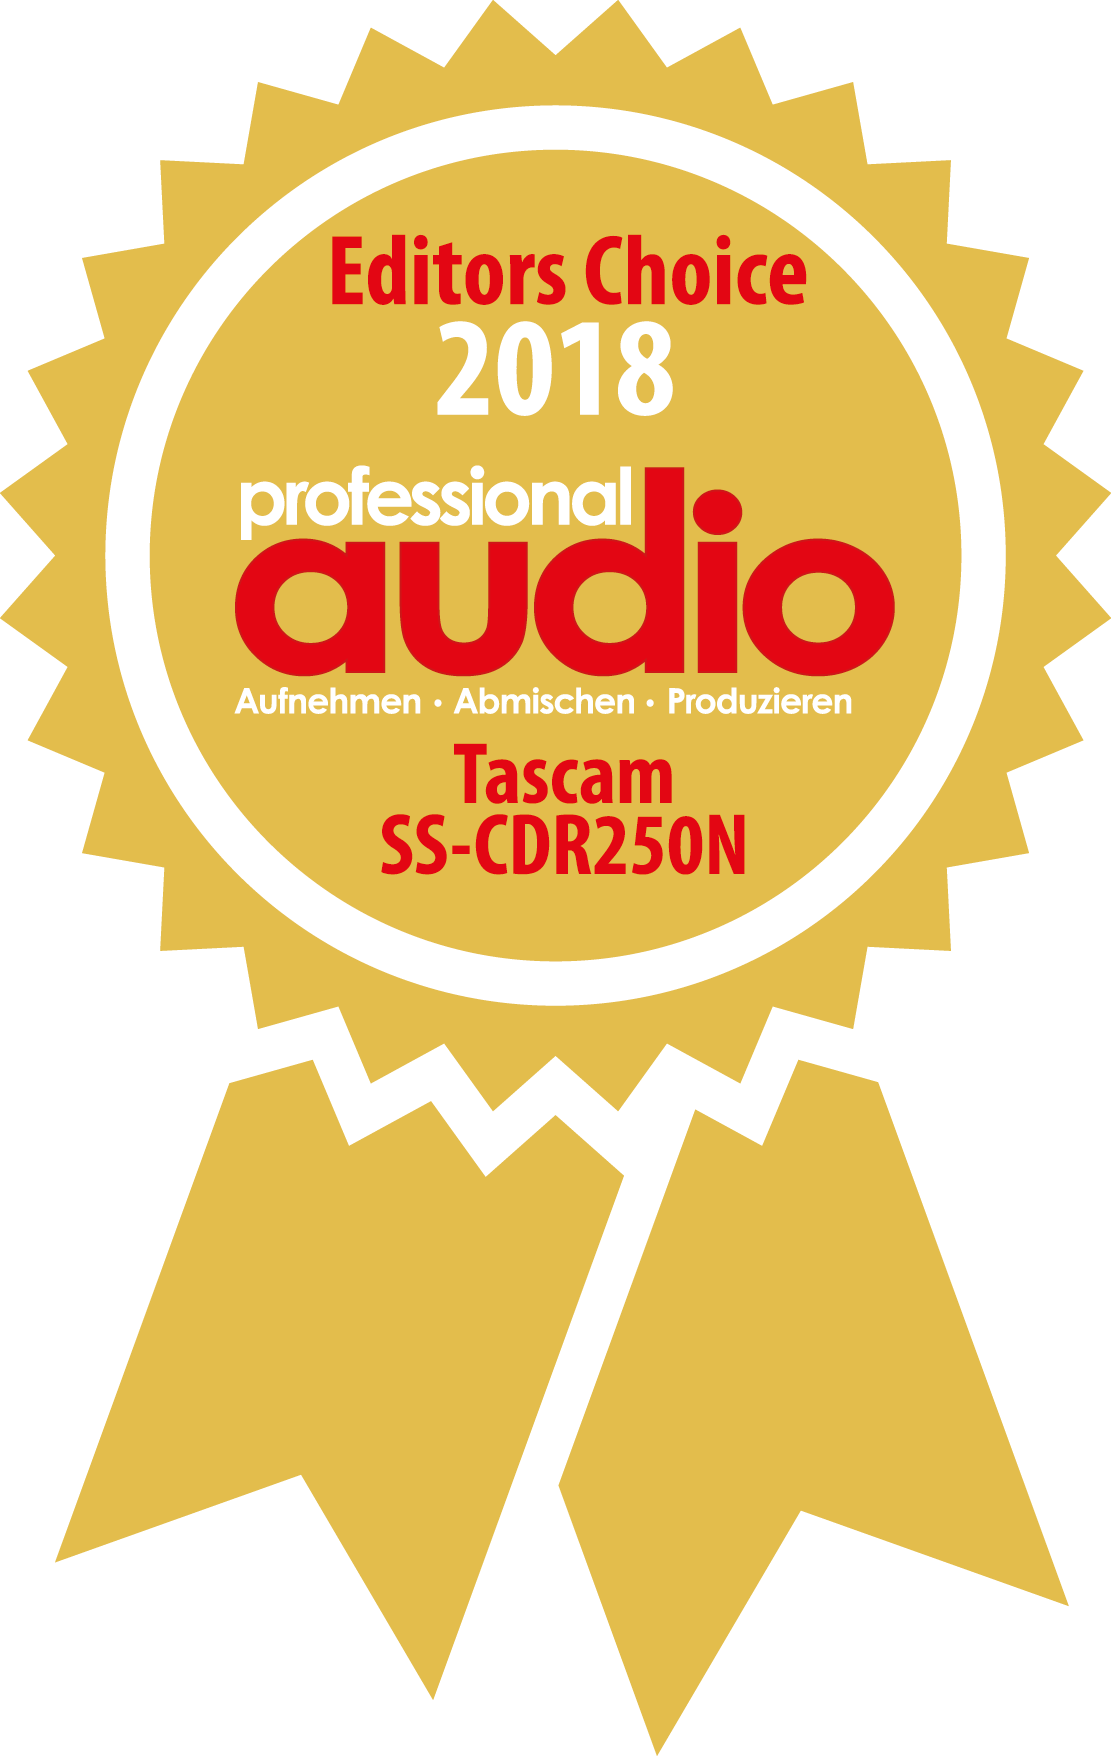 Tascam SS-CDR250: Vom Professional Audio Magazin mit dem Testsiegel „Editor’s Choice 2018“ ausgezeichnet